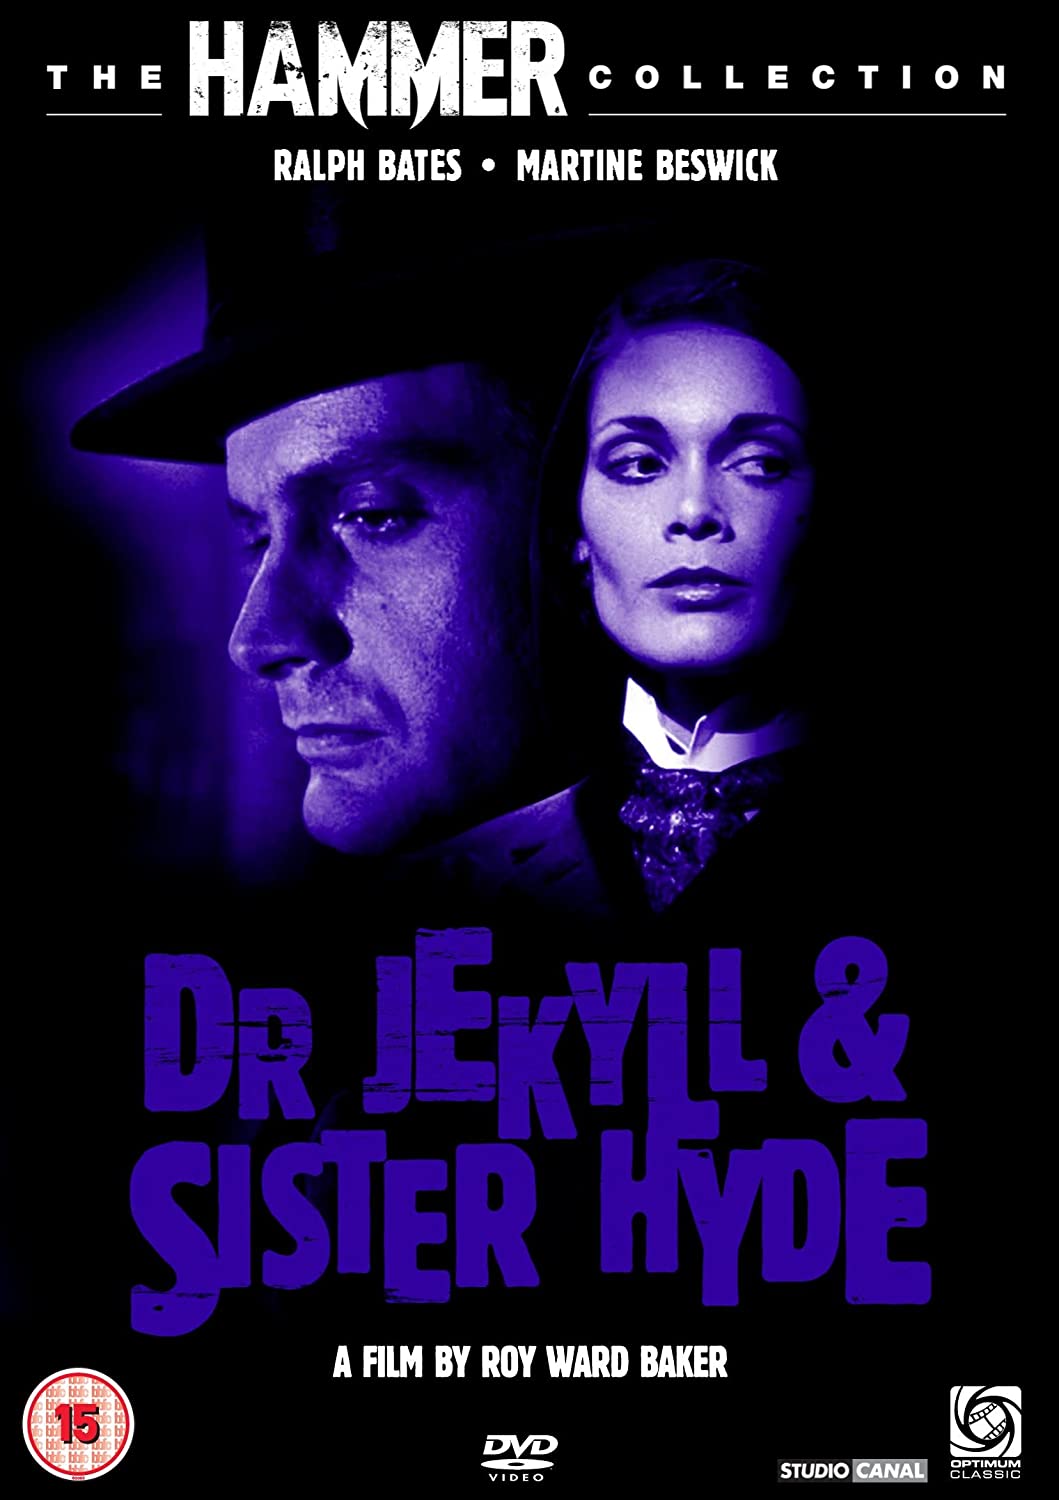 Doctor Jekyll & Sister Hyde - Horror/Sci-fi [DVD]